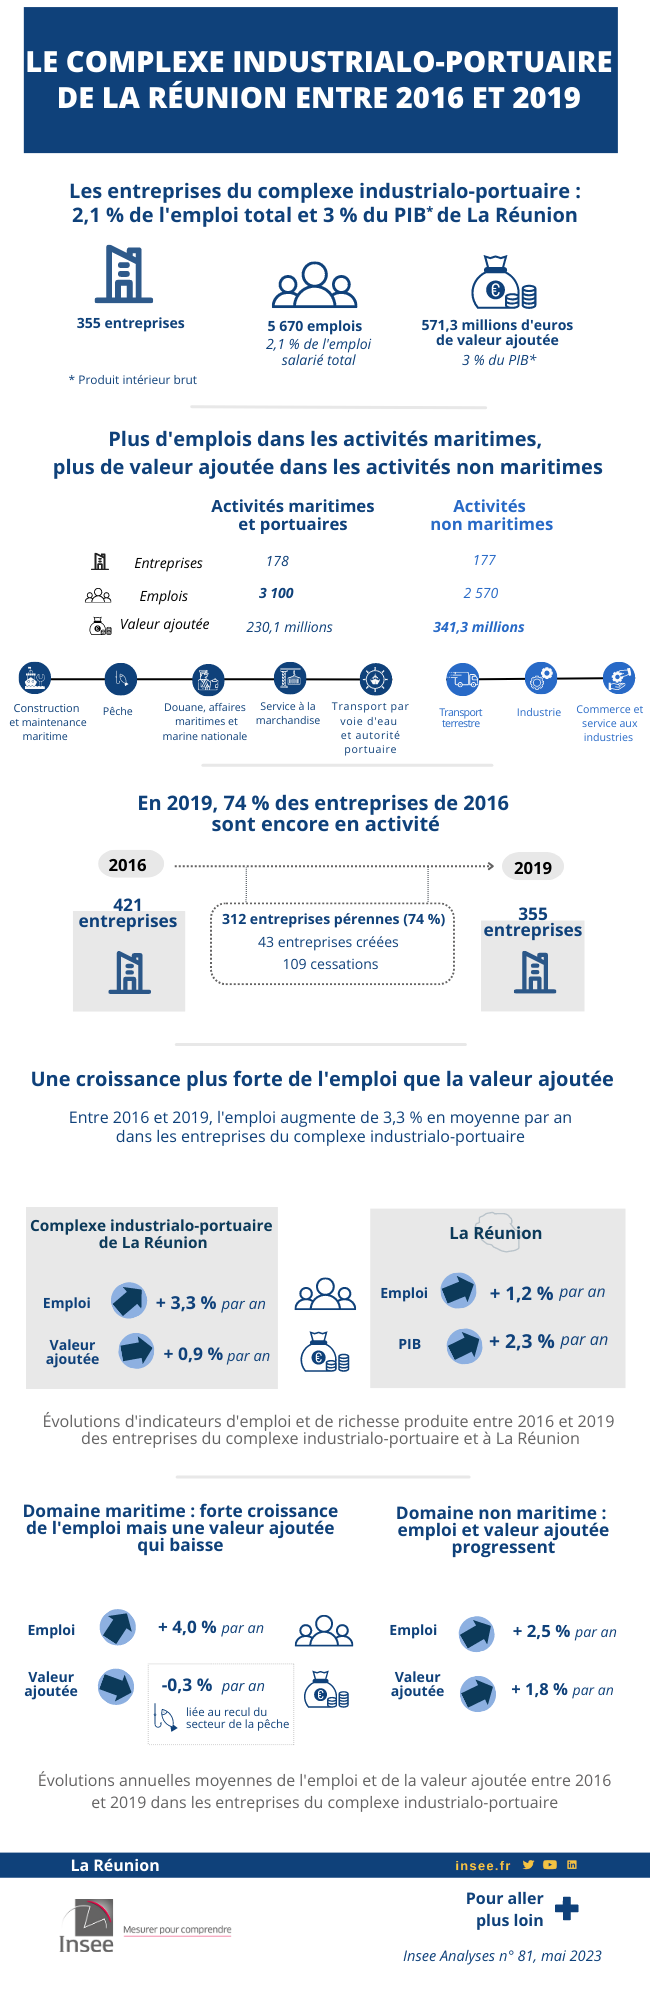 Infographie sur le complexe industrialo-portuaire de La Réunion entre 2016 et 2019